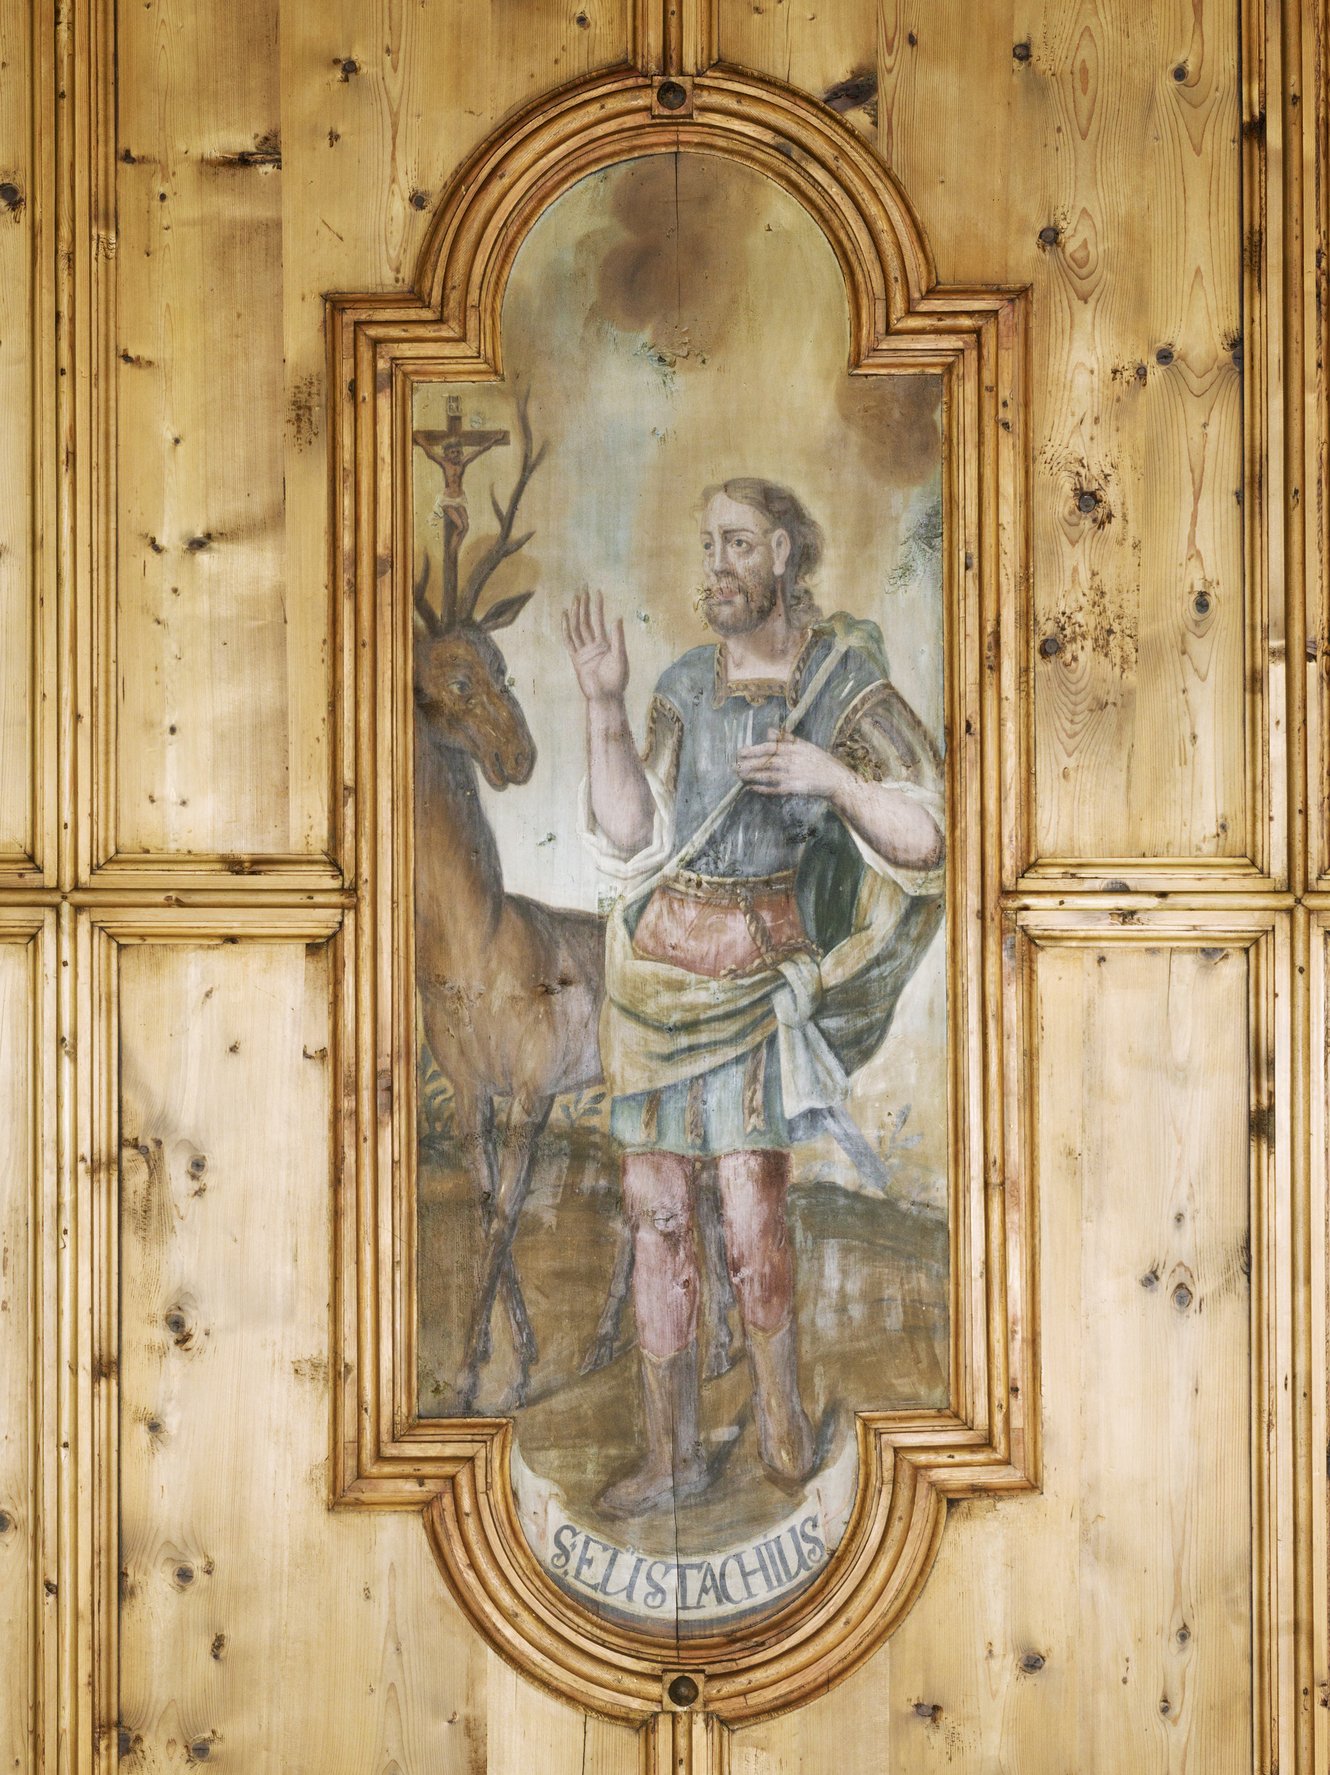 Hl. Eustachius, Ausschnitt aus den Vierzehn Nothelfern, Deckenbild aus der Pfarrkirche Bartholomäberg, Michael Lorünser, 1732; Foto: Dieter Petras